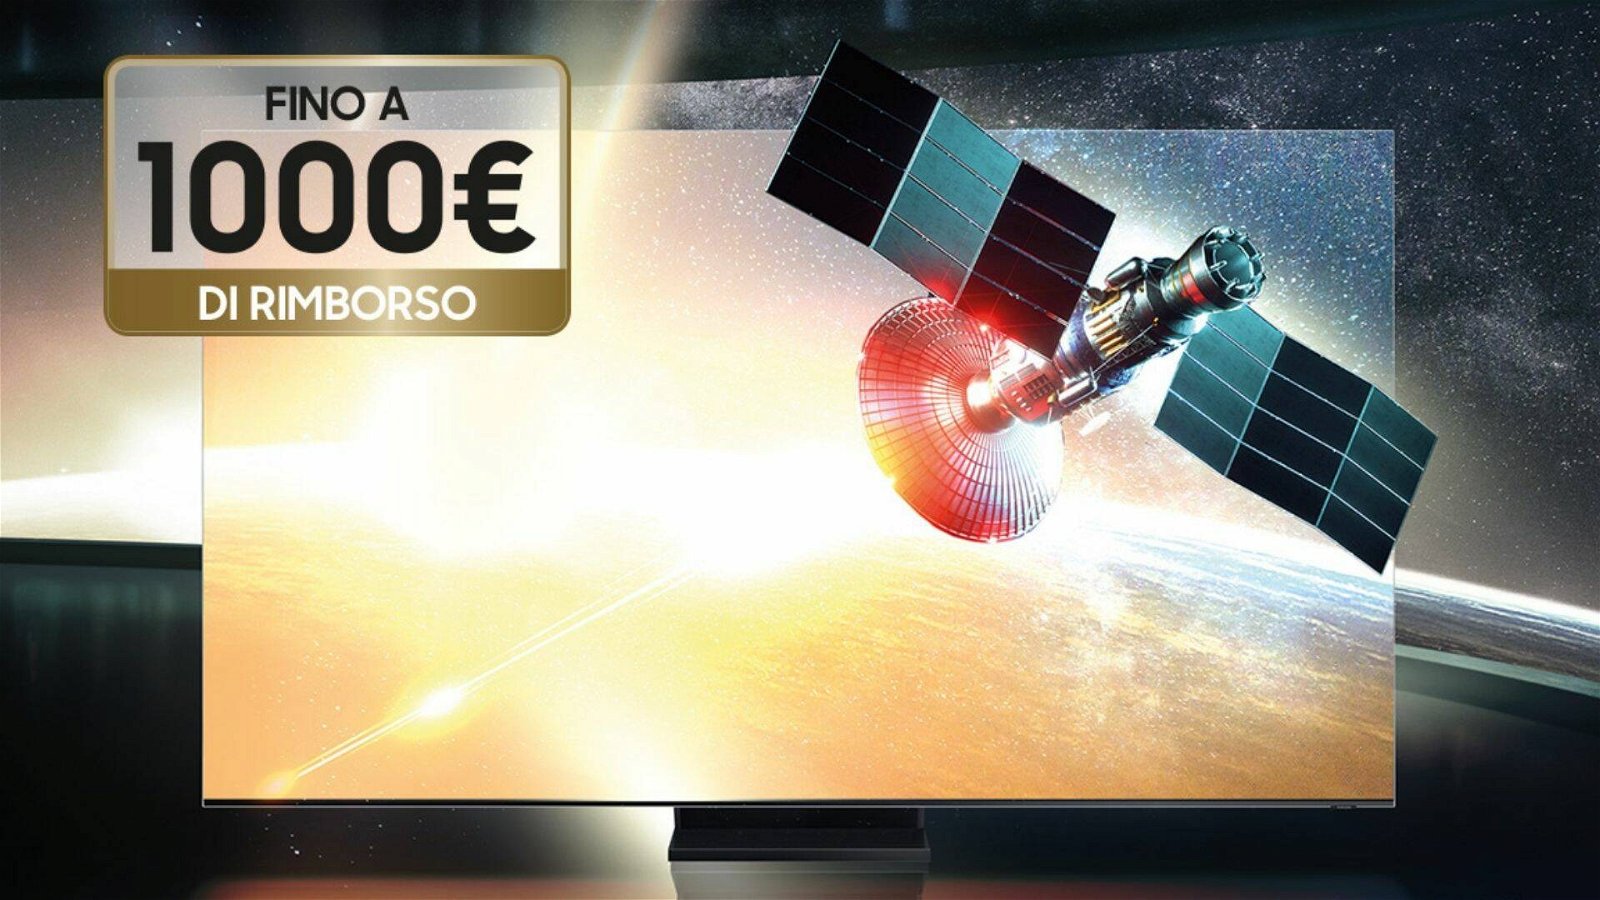 Immagine di Acquista una smart TV Samsung QLED 8K, e scopri come ricevere 1000€ di rimborso!